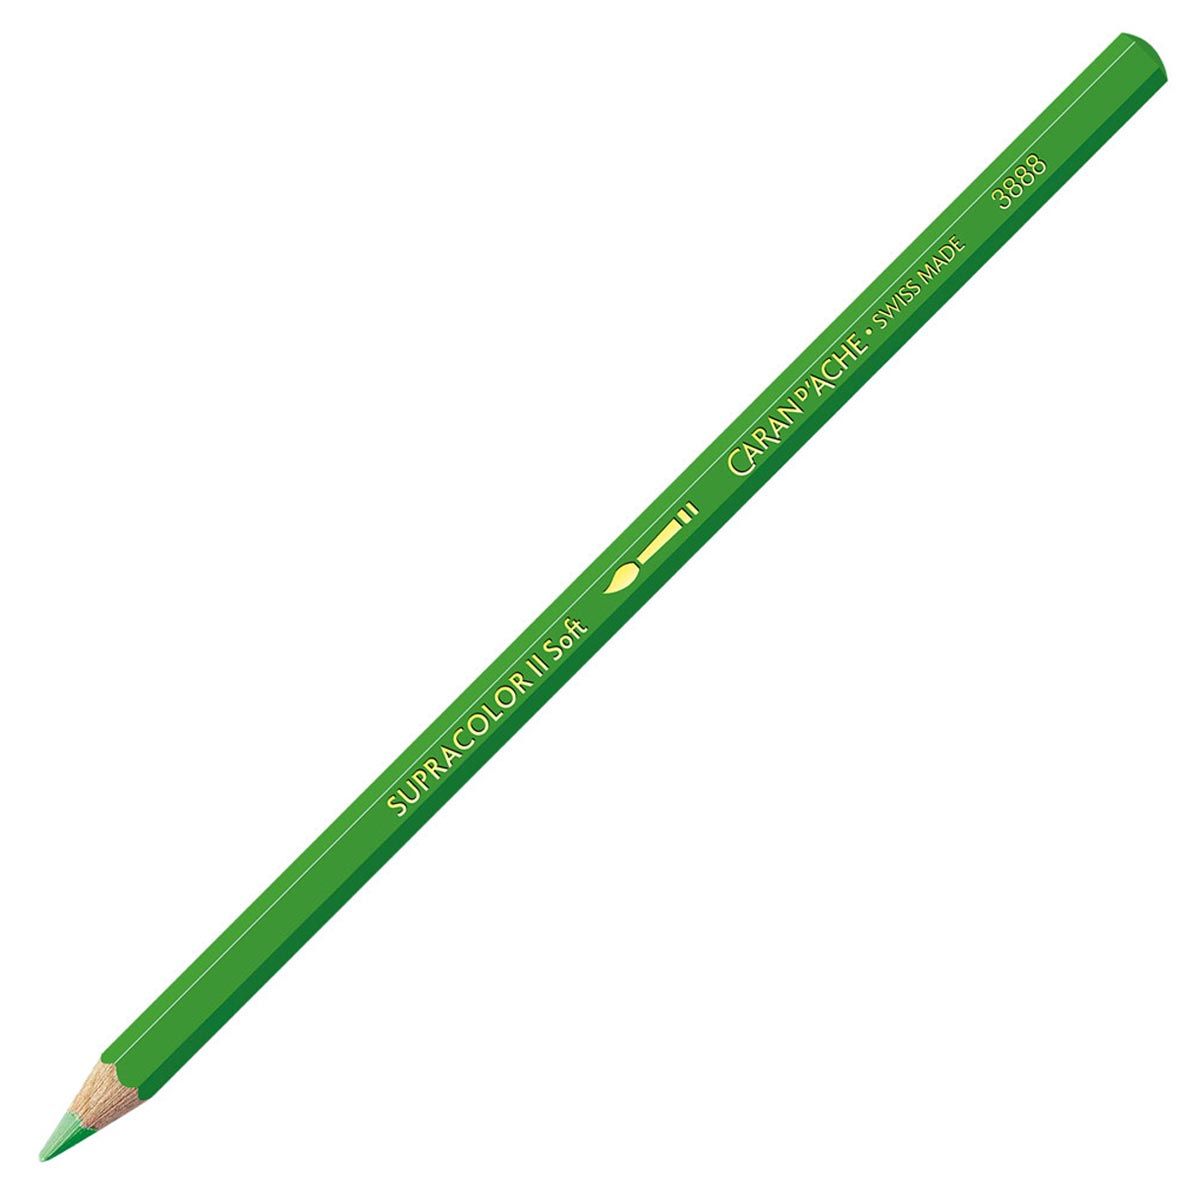 Caran d'Ache Supracolor ll Soft Aquarelle Pencil - Yellow Green 230